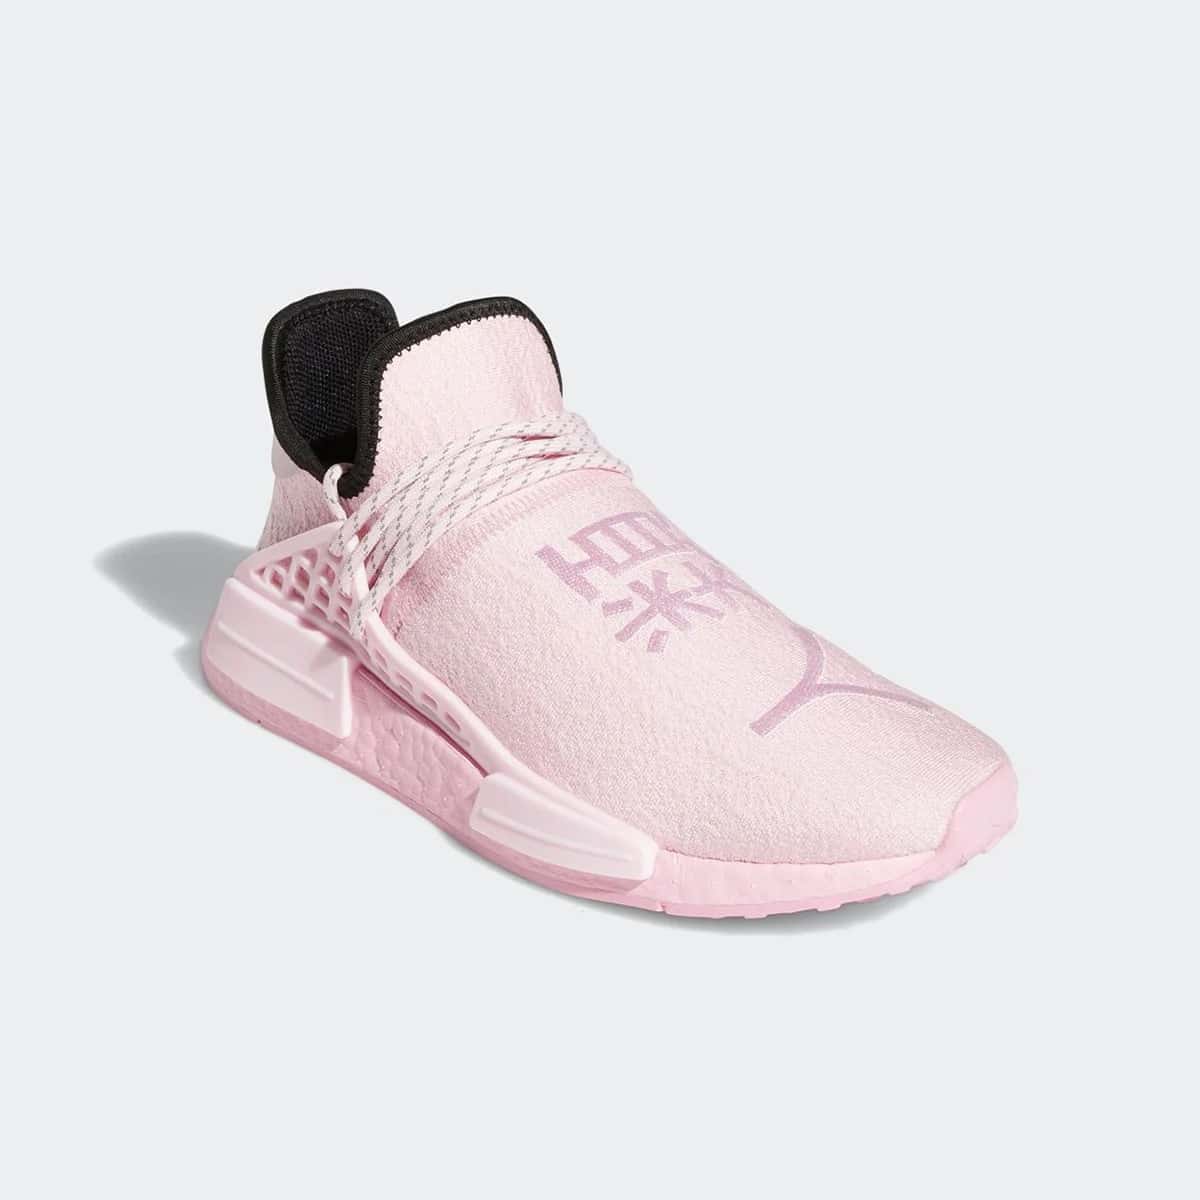 퍼렐 윌리암스 x 아디다스 NMD HU 트리플 핑크(Pharrell Williams x adidas Originals NMD HU Triple Pink)-GY0088